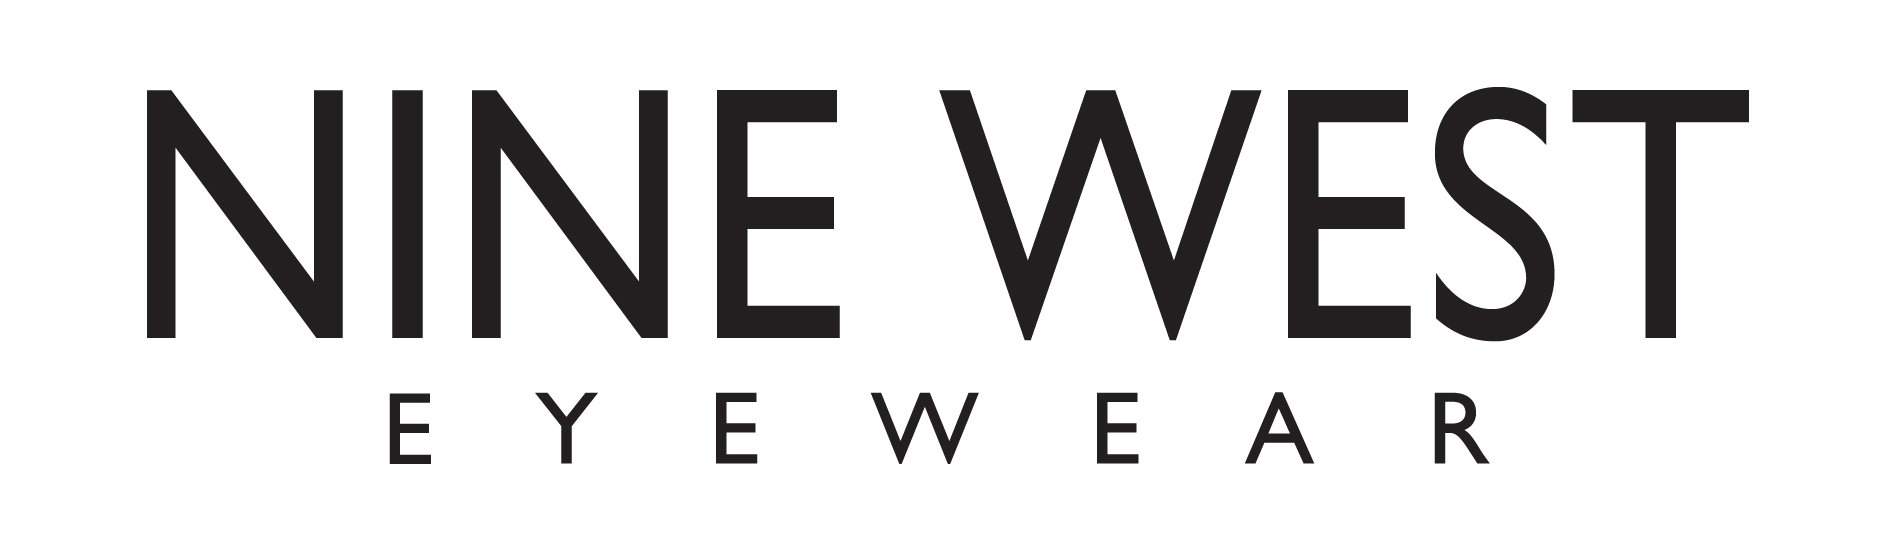 NineWest-logo.jpg